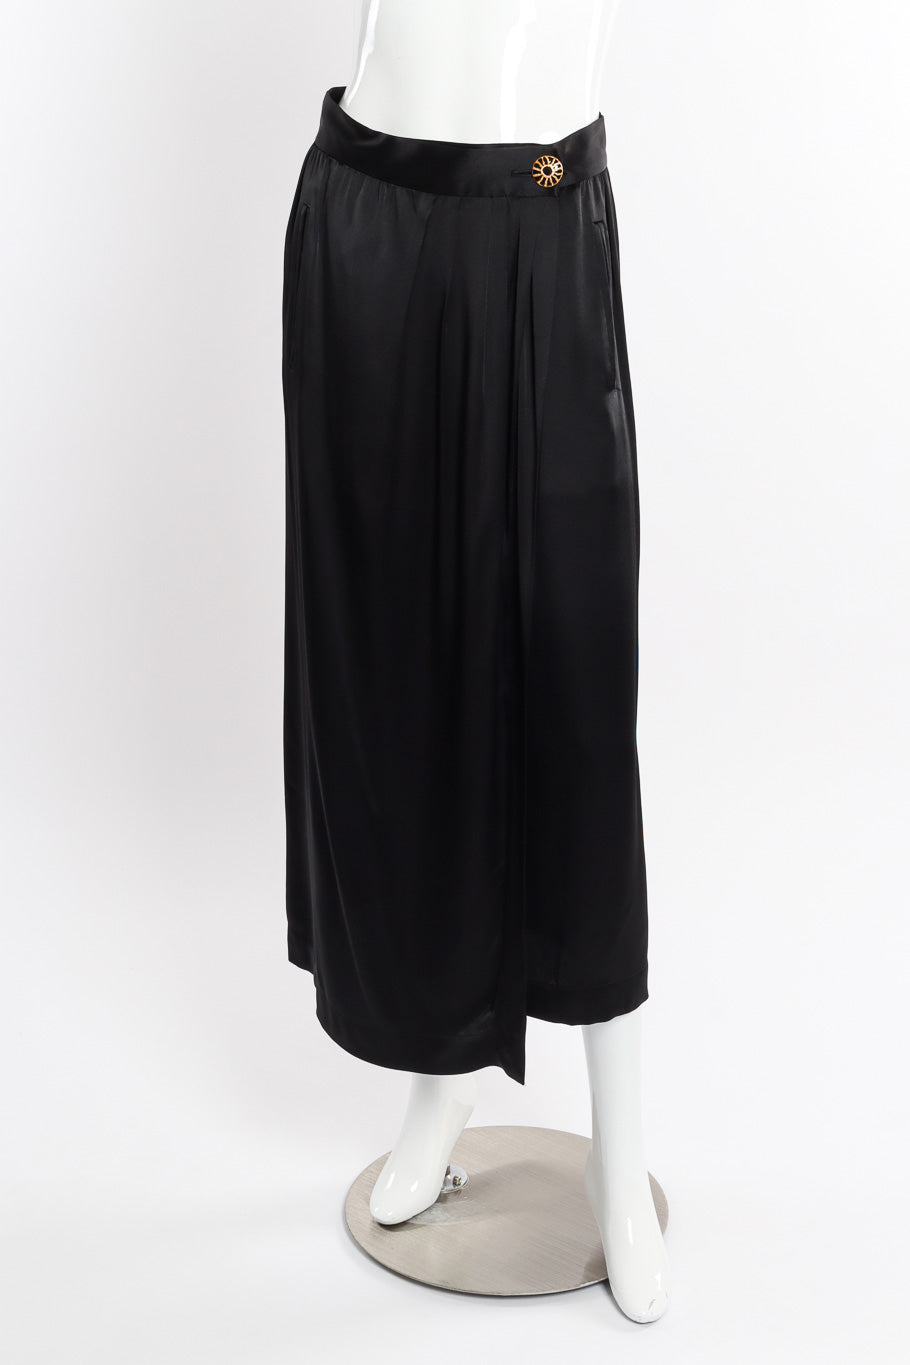 Vintage Yves Saint Laurent Wrap Midi Skirt front view on mannequin @recessla